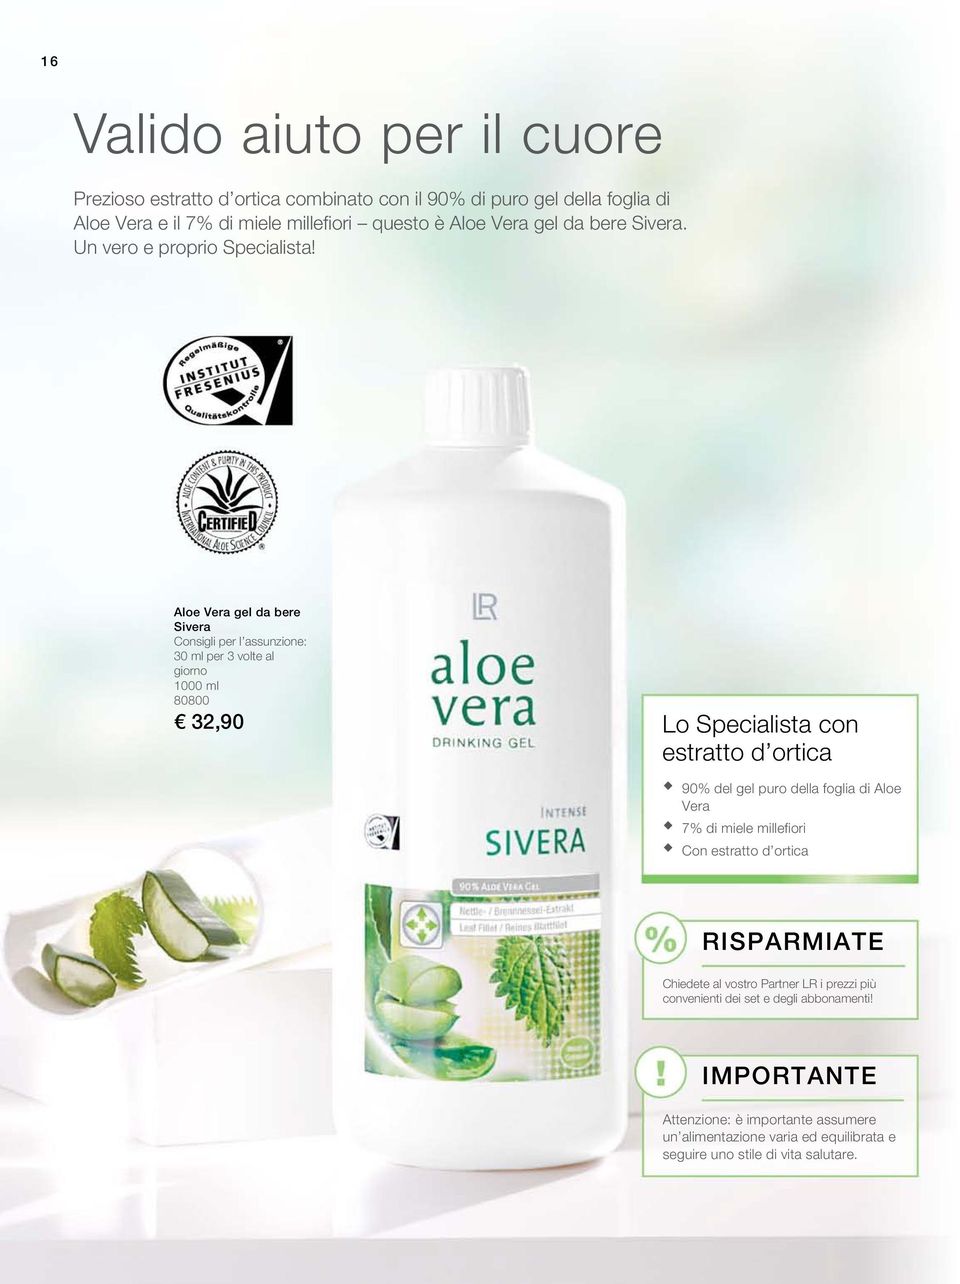 Aloe Vera gel da bere Sivera Consigli per l assunzione: 30 ml per 3 volte al giorno 1000 ml 80800 32,90 Lo Specialista con estratto d ortica 90% del gel puro della